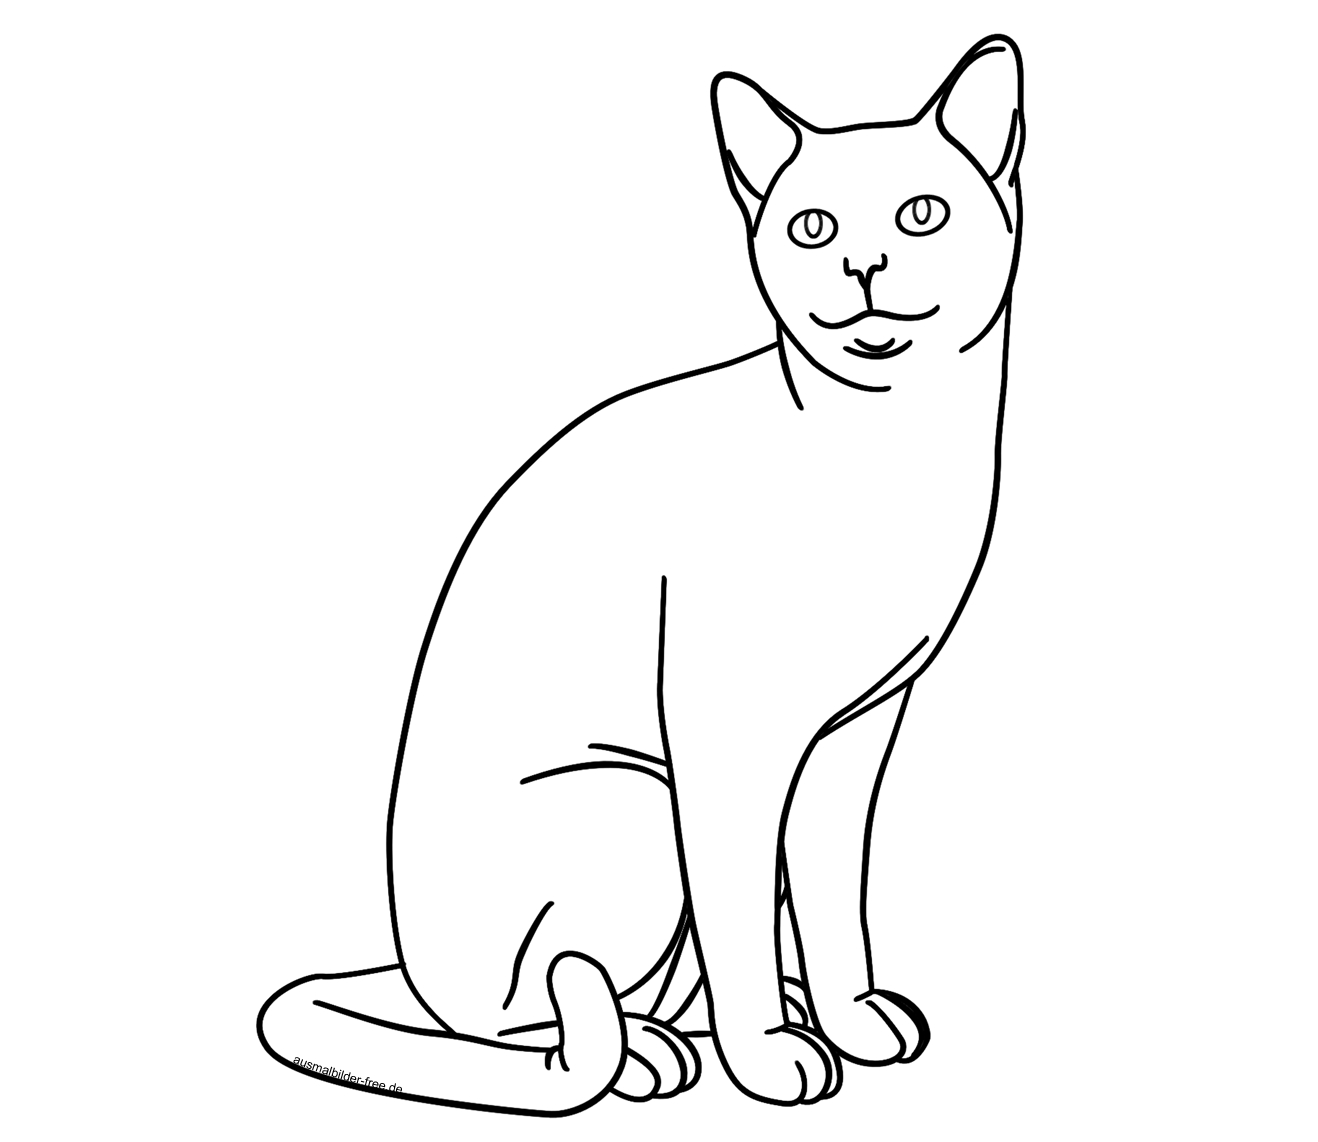 Ausmalbilder-Tiere-Katze-Katzen-Karikaturen-Comic-Cartoon ganzes Ausmalen Katze